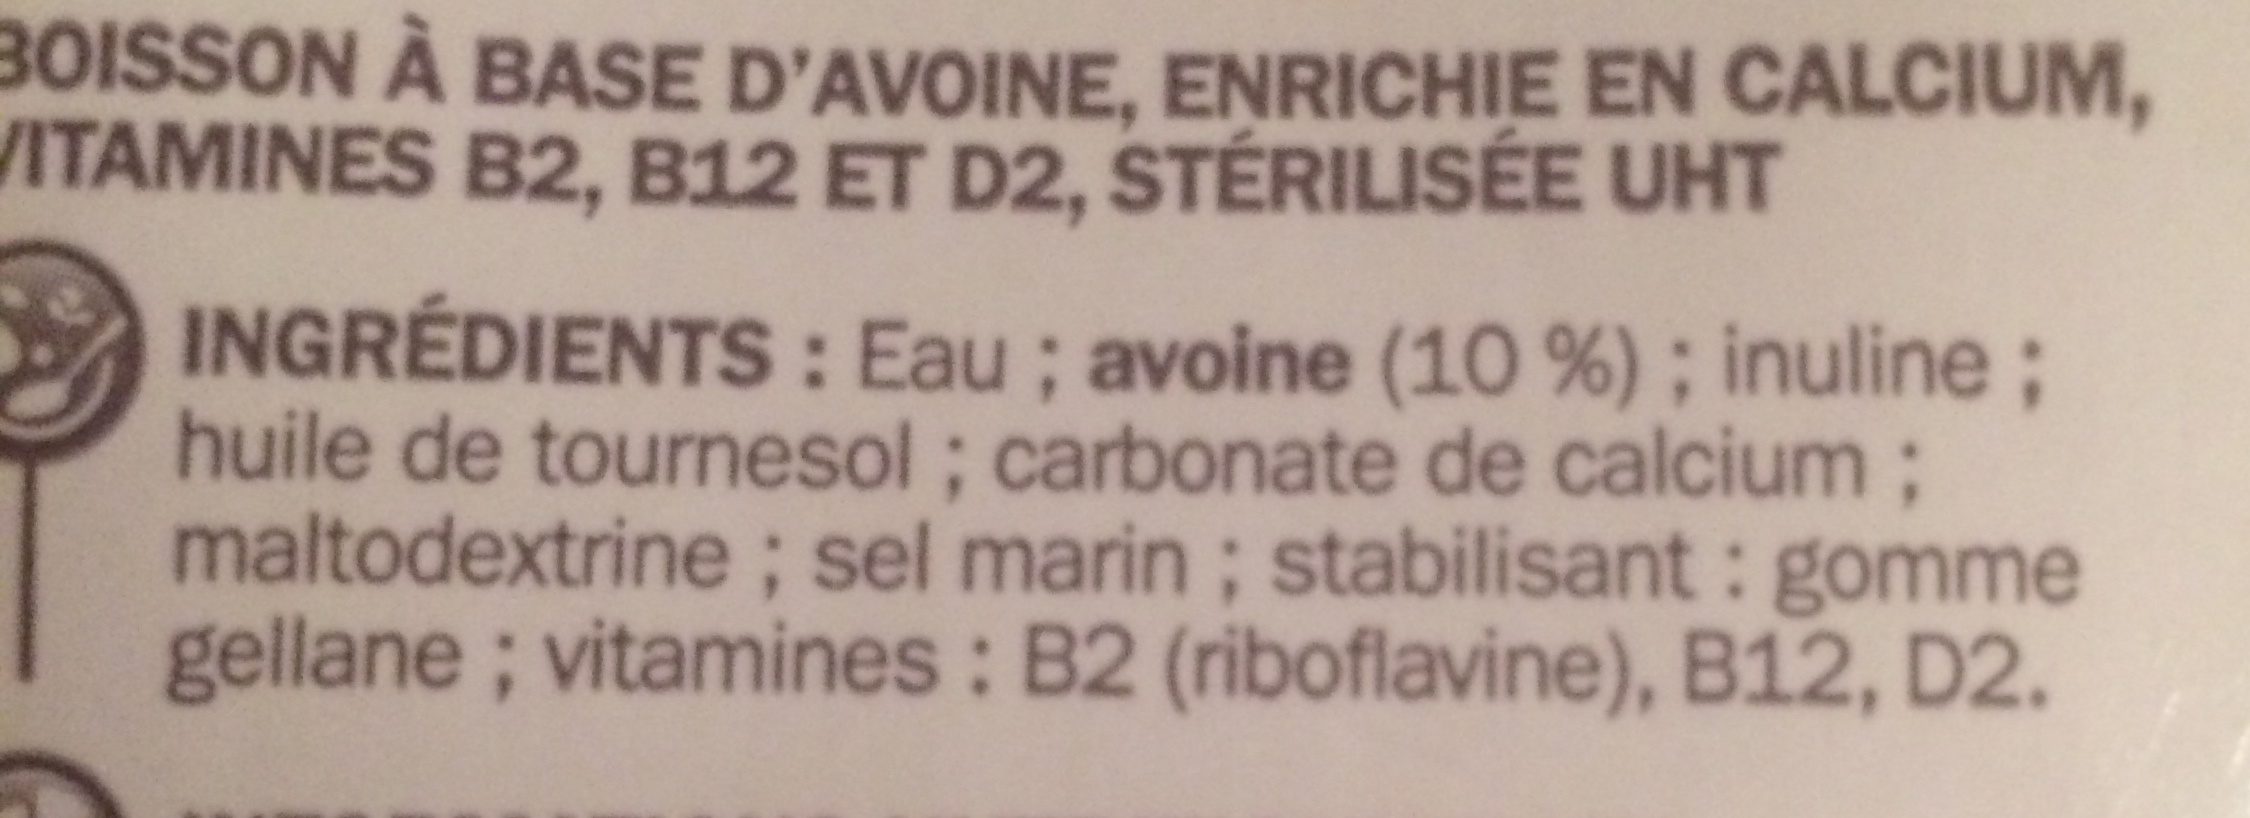 Boisson d'Avoine - Ingredienti - fr